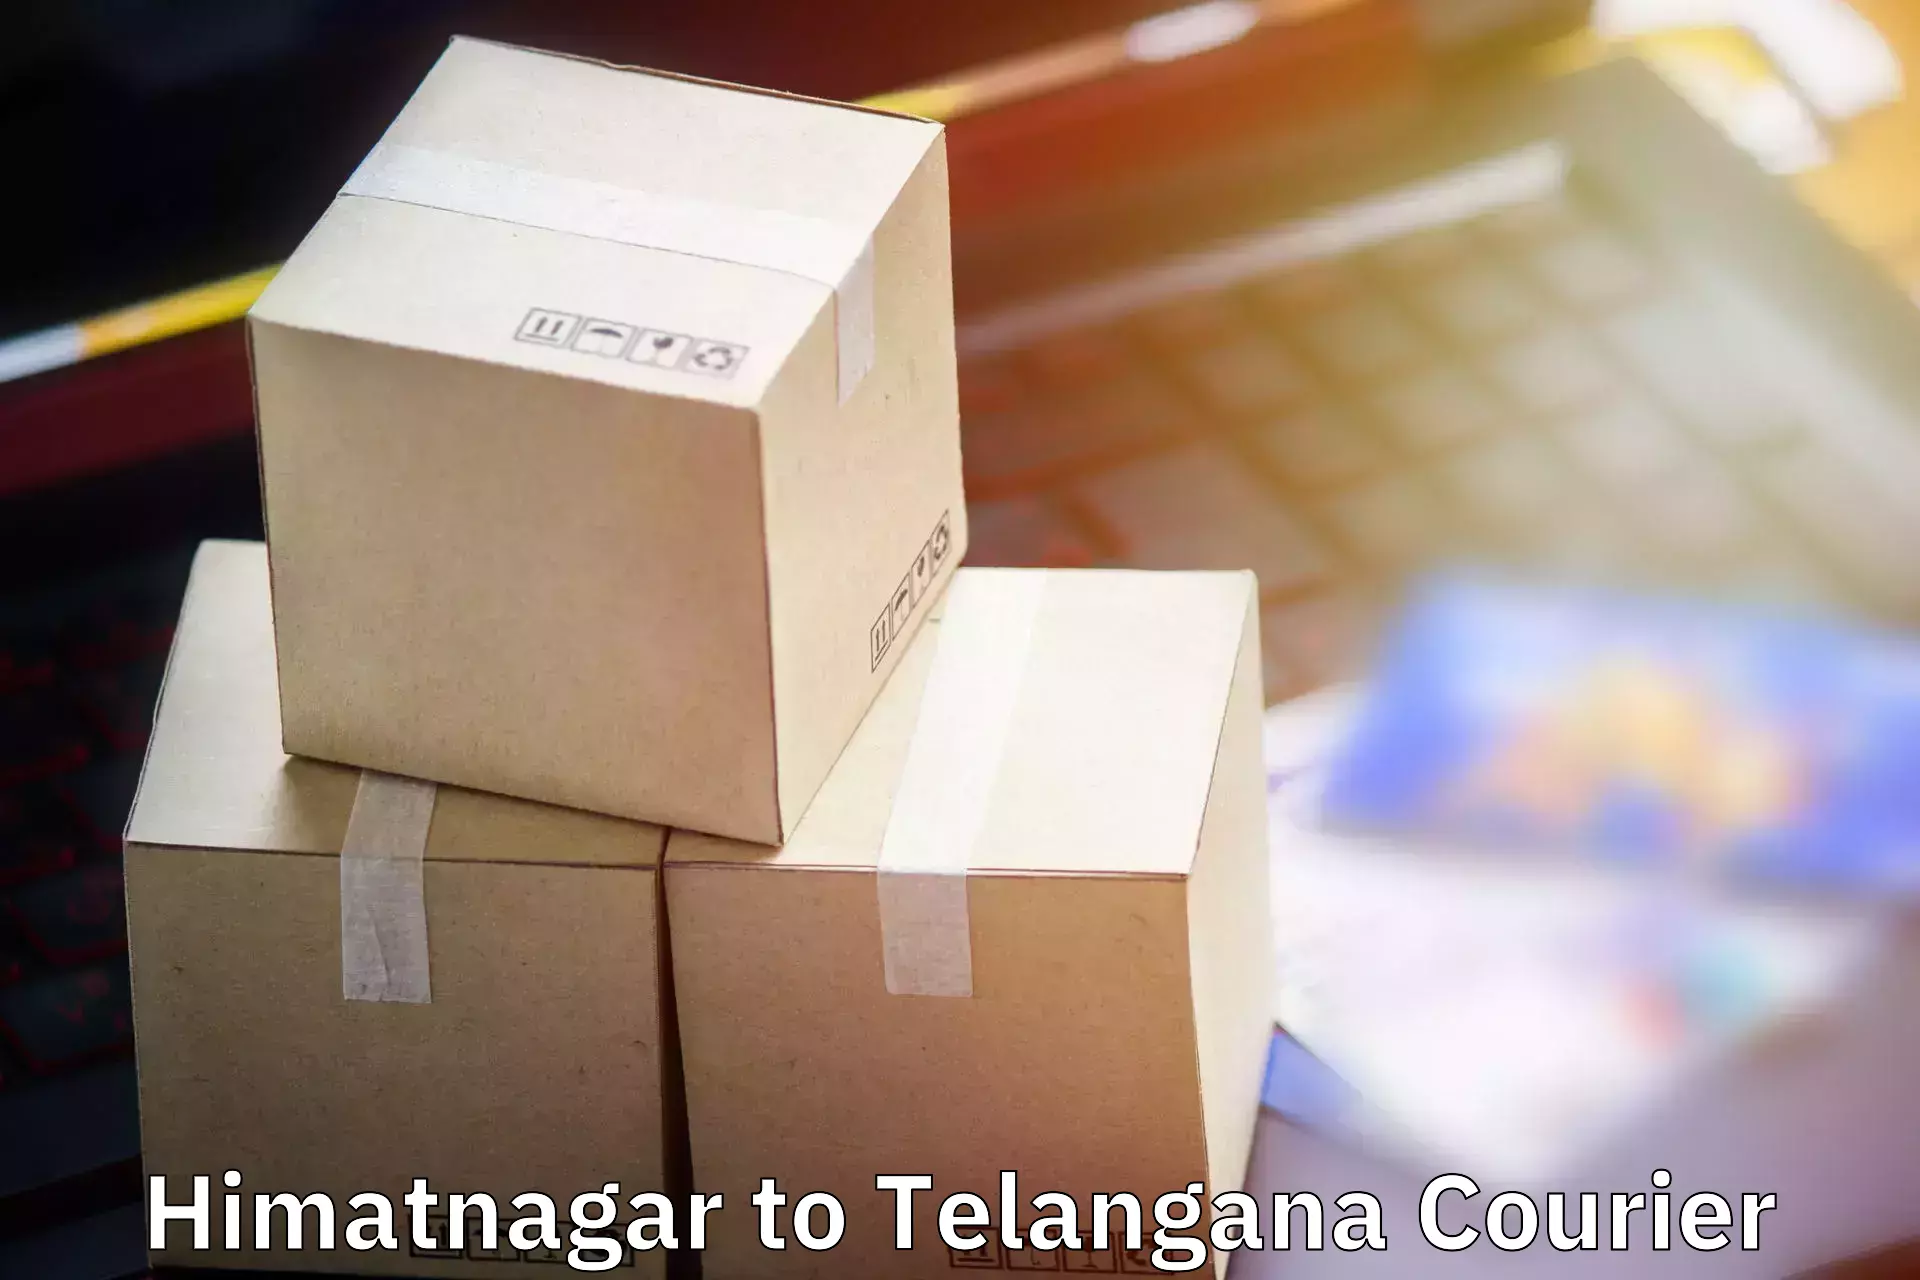 Baggage courier advice Himatnagar to Kakeshwaram